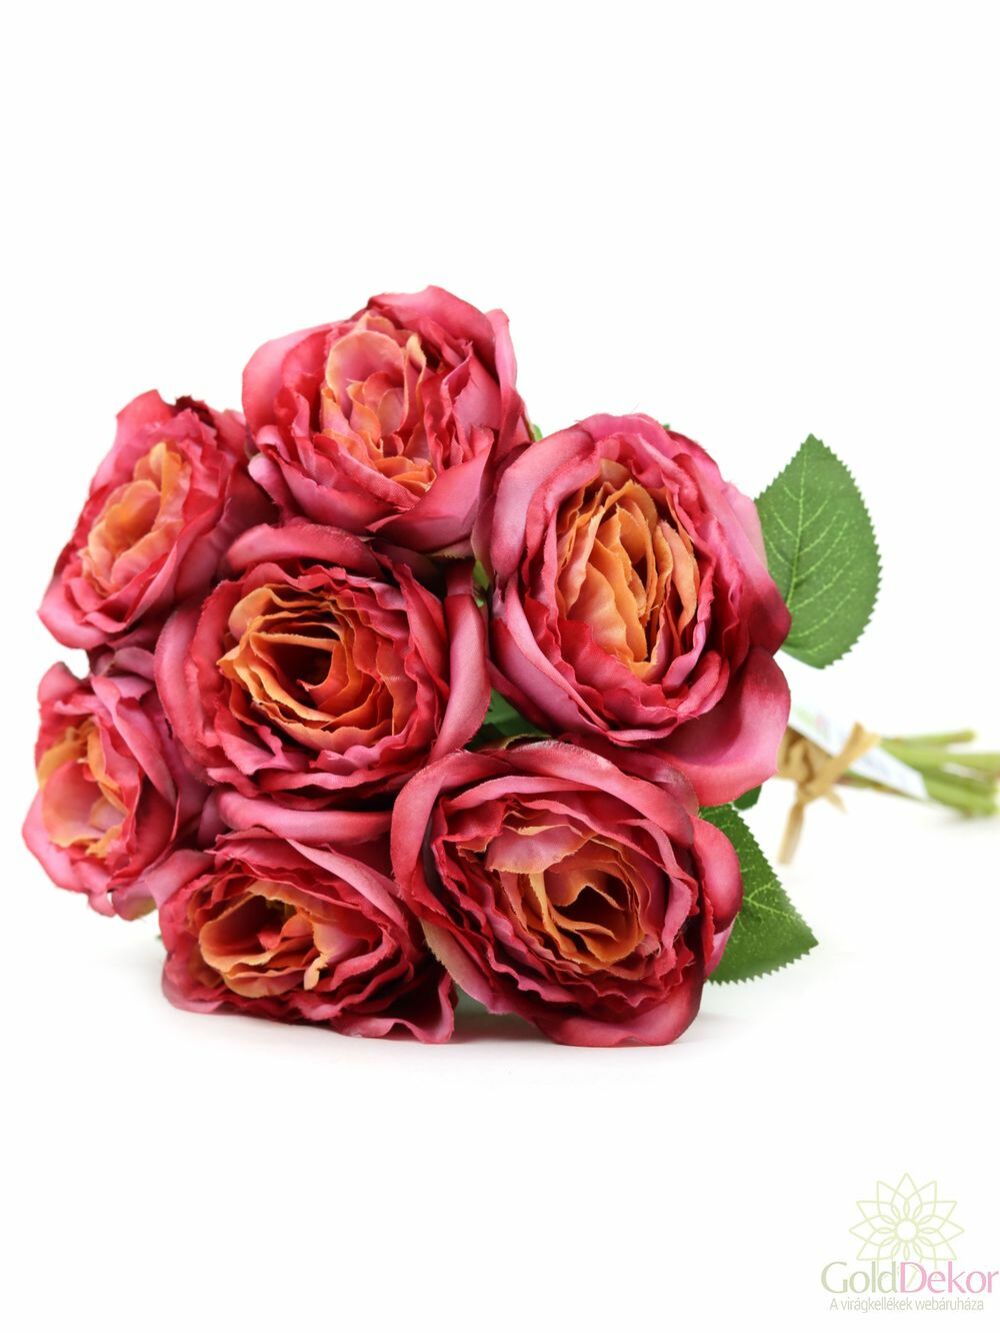 7 szálas rózsa csokor - Cirmos mályva